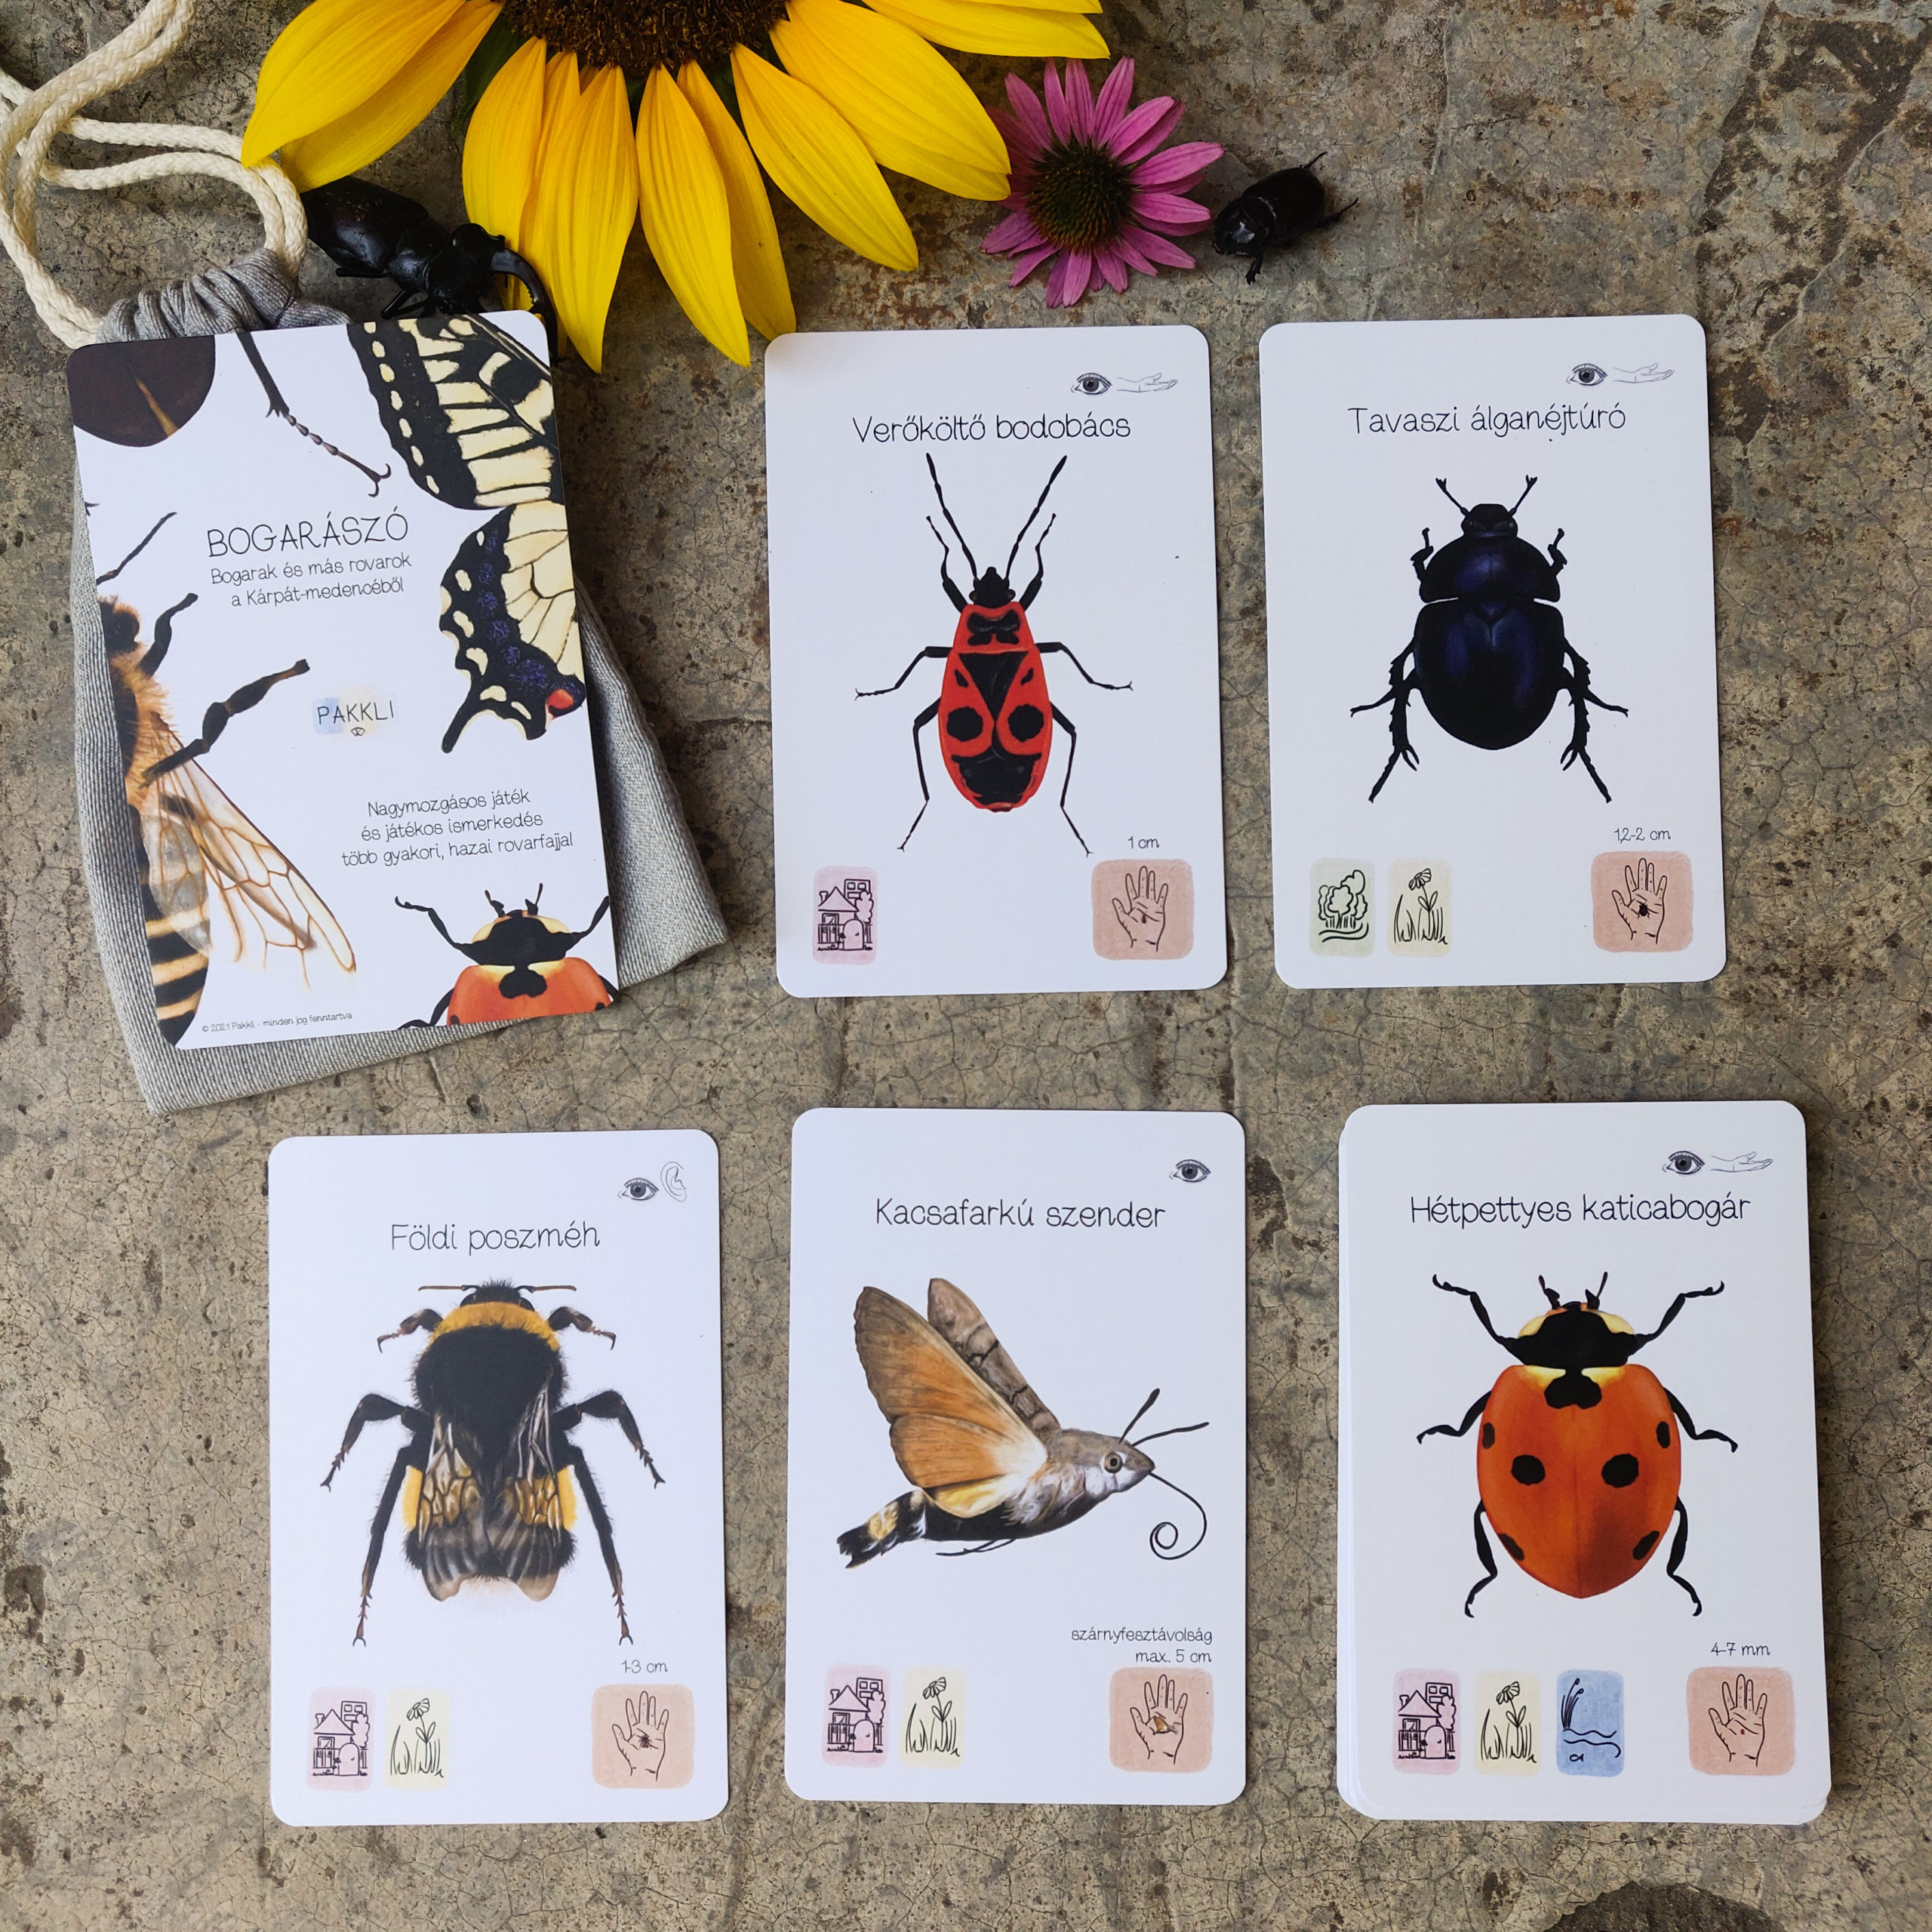 Bogarászó kártyajáték - bogarak kiterített